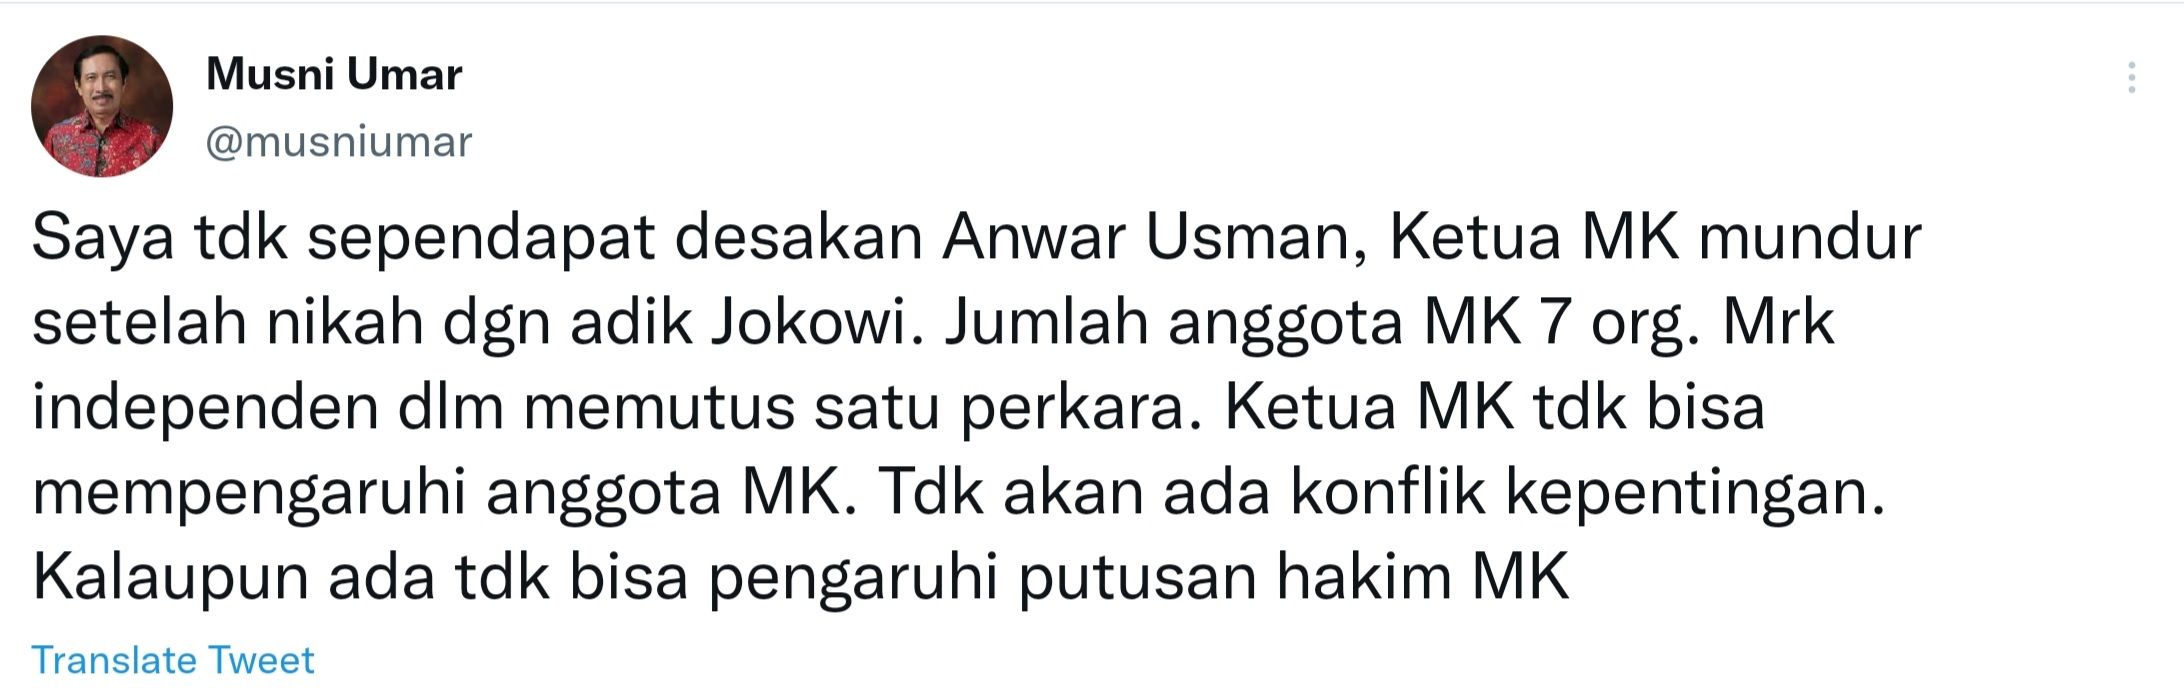 Cuitan Musni Umar menanggapi desakan yang meminta Anwar Usman mundur dari jabatan Ketua MK.